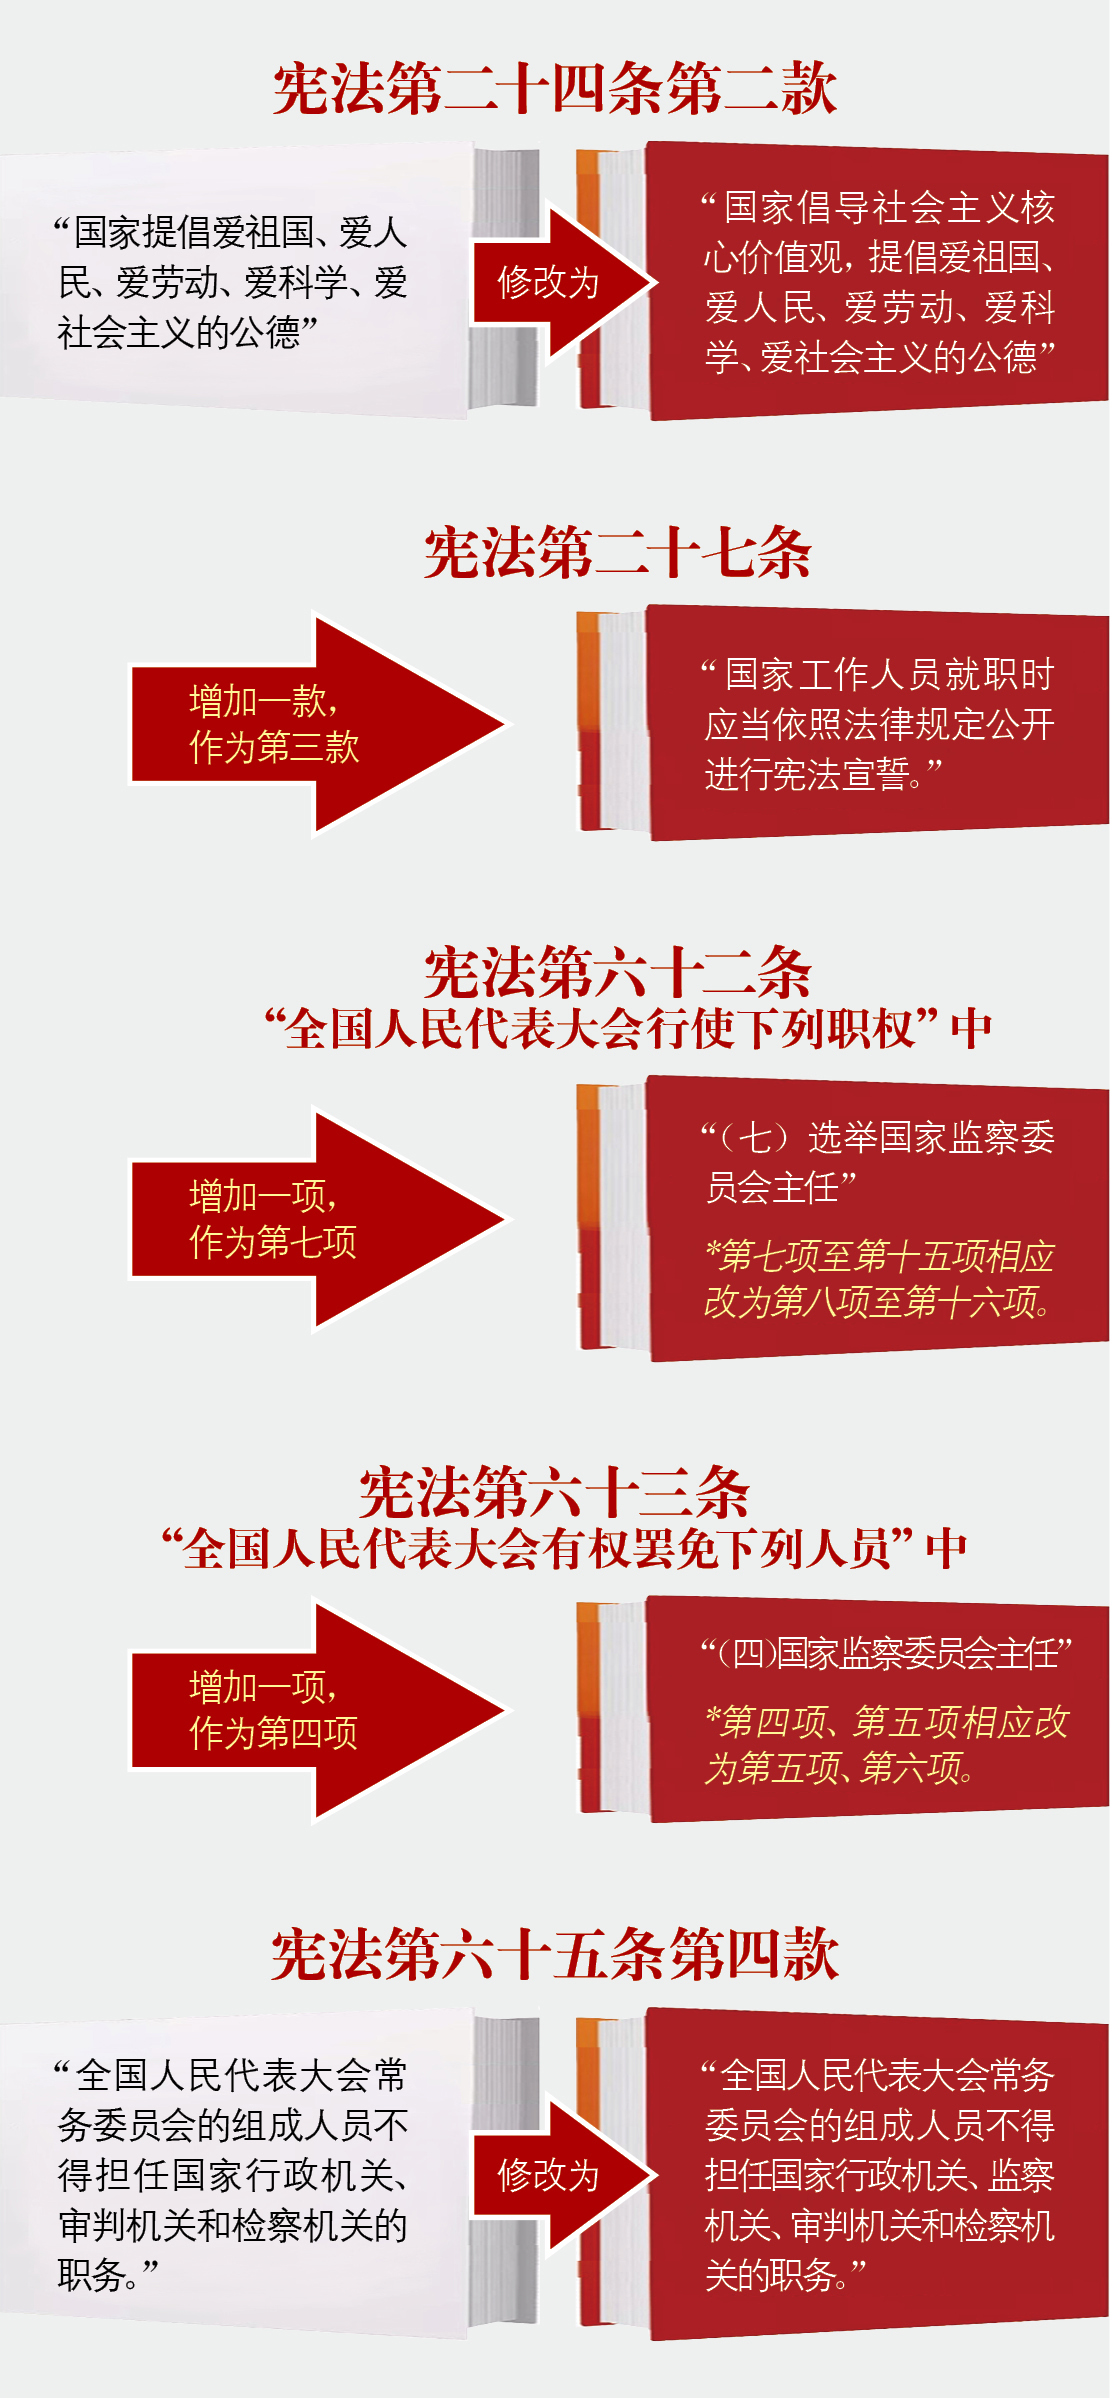 一图看懂《中华人民共和国宪法修正案》|声明